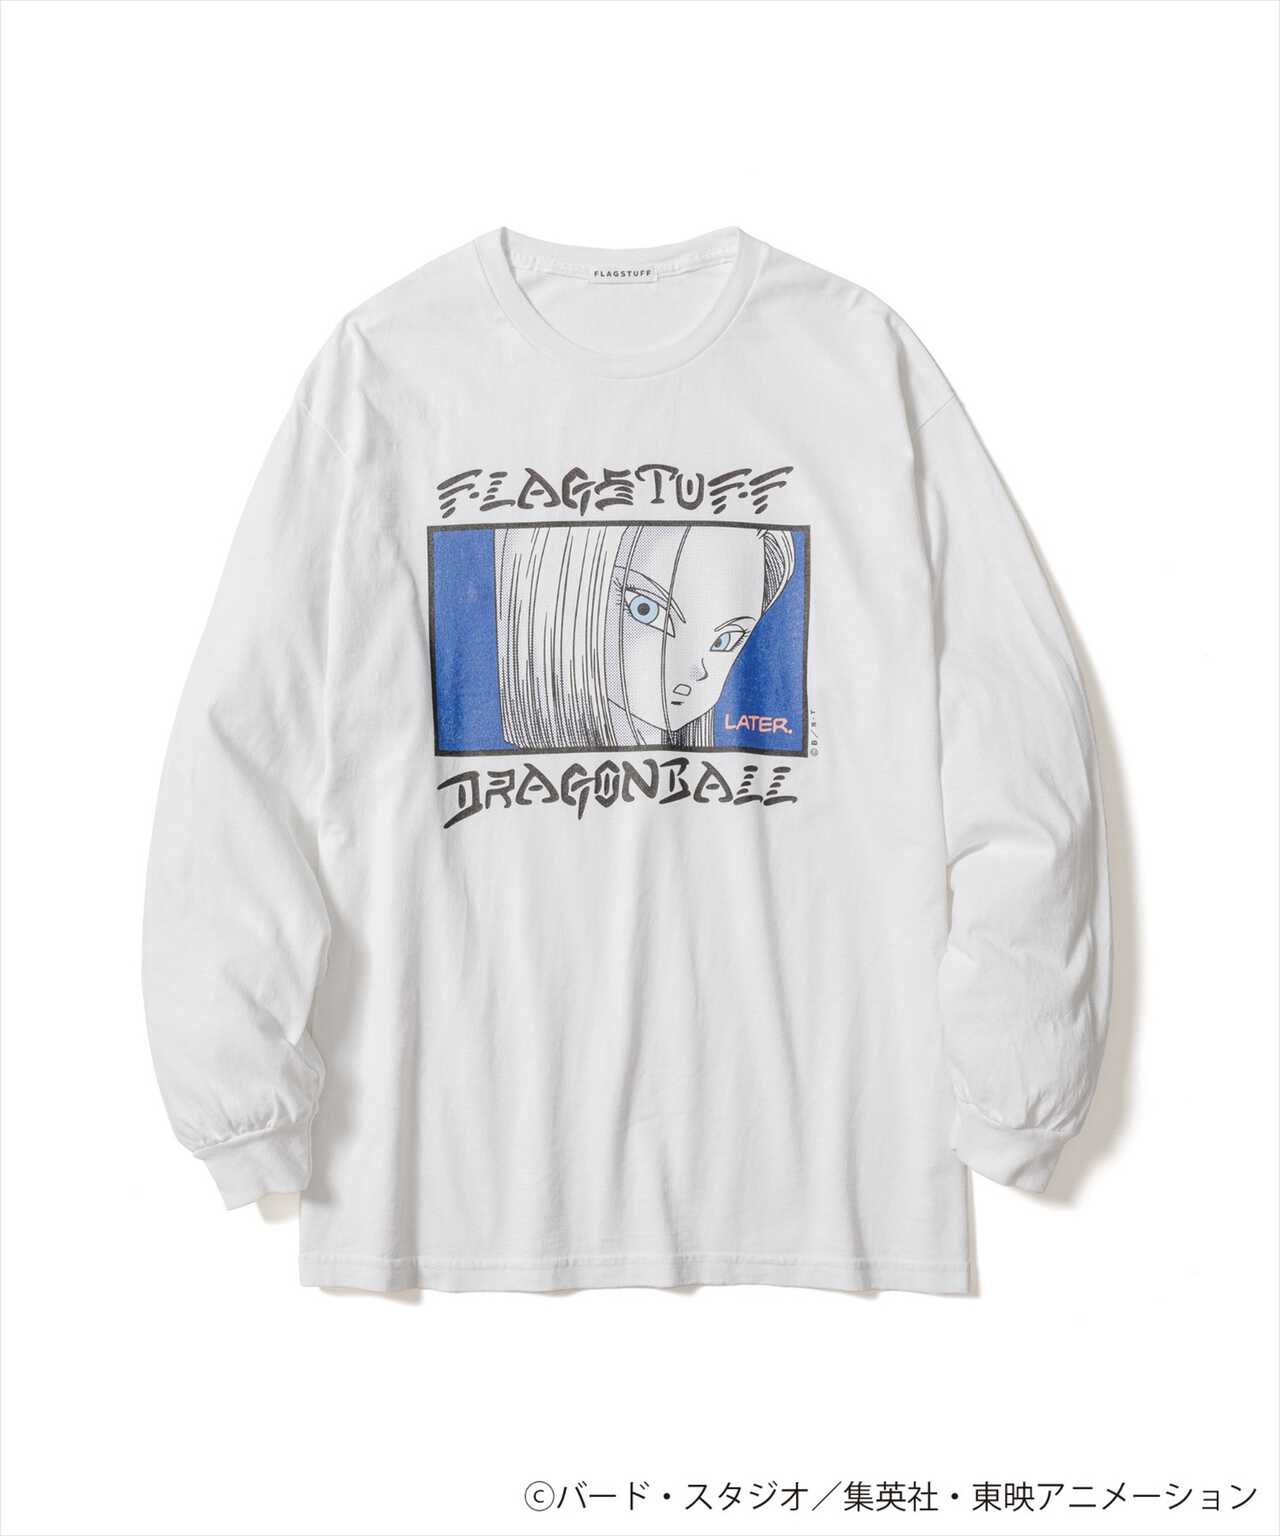 10,440円【希少・新品】F-LAGSTUF-F ドラゴンボール 17号18号 Tシャツ